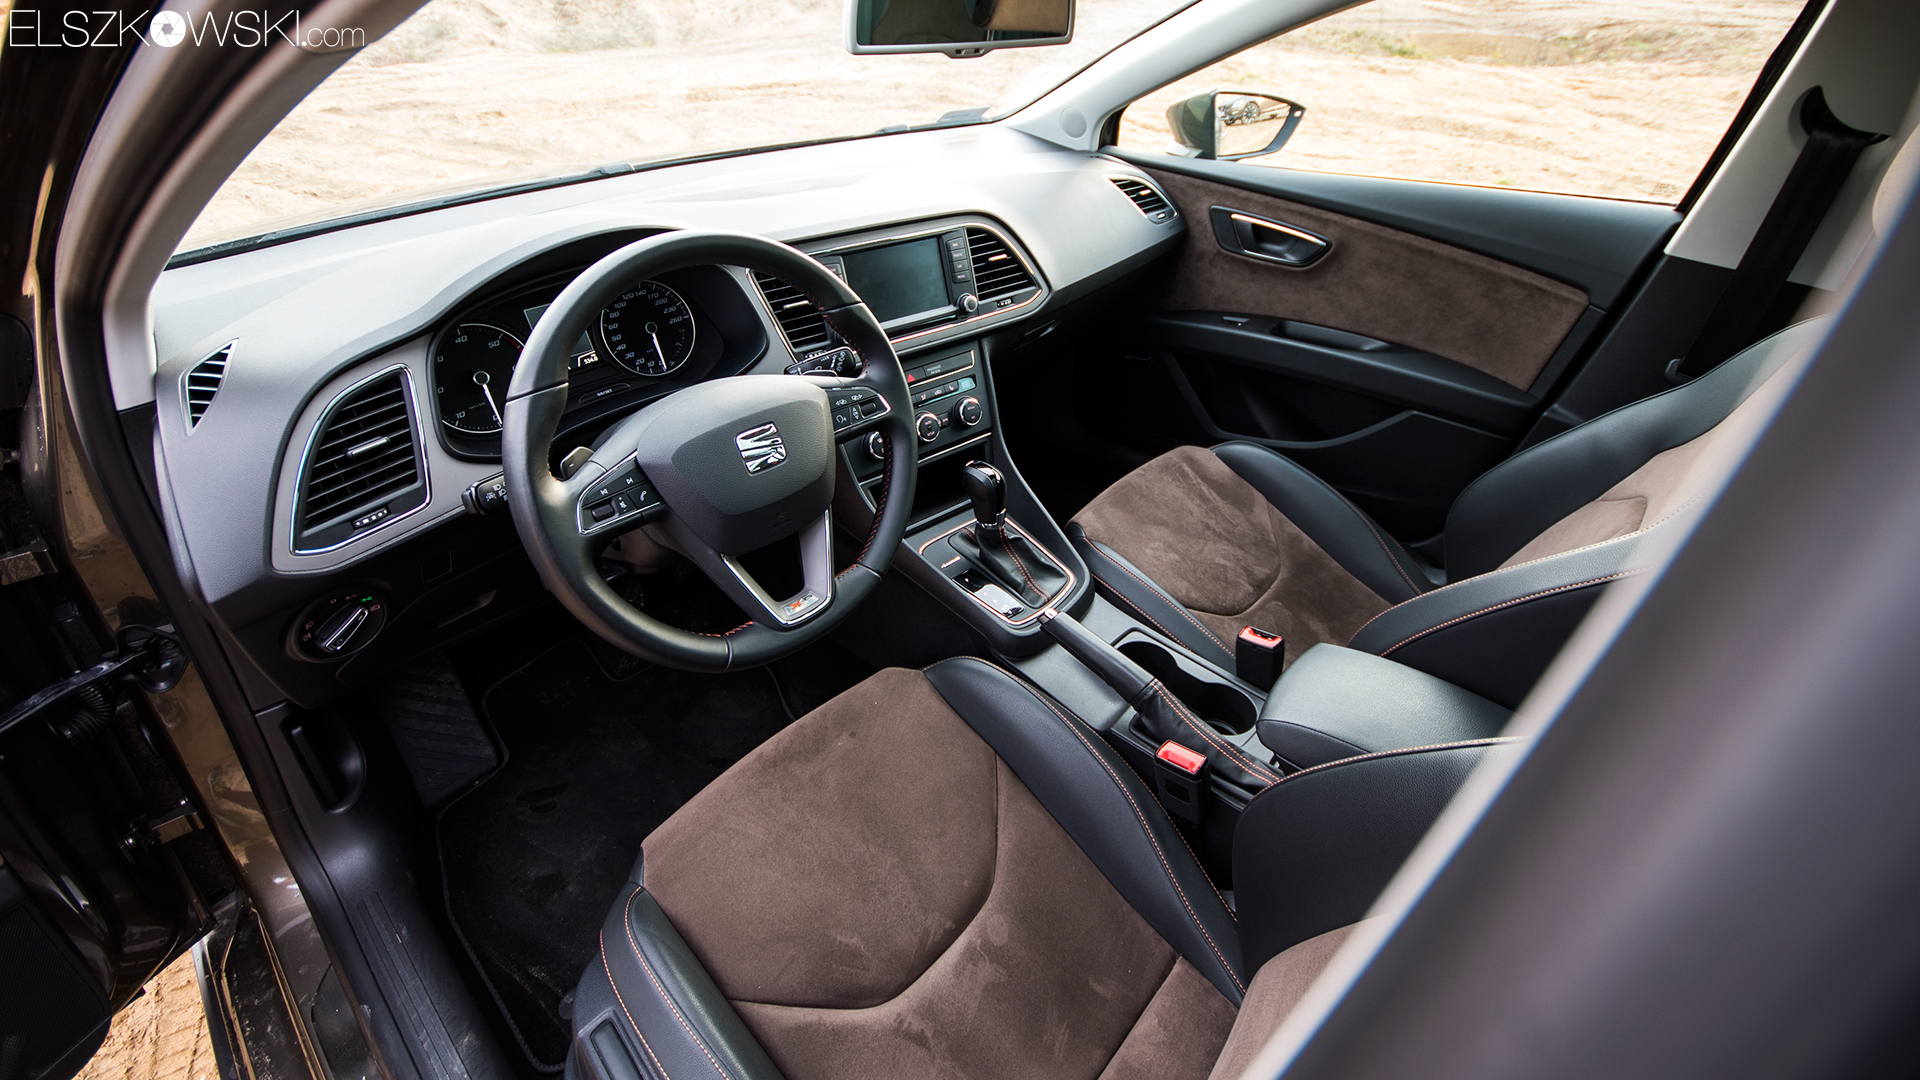 Test porównawczy Volvo i Seat